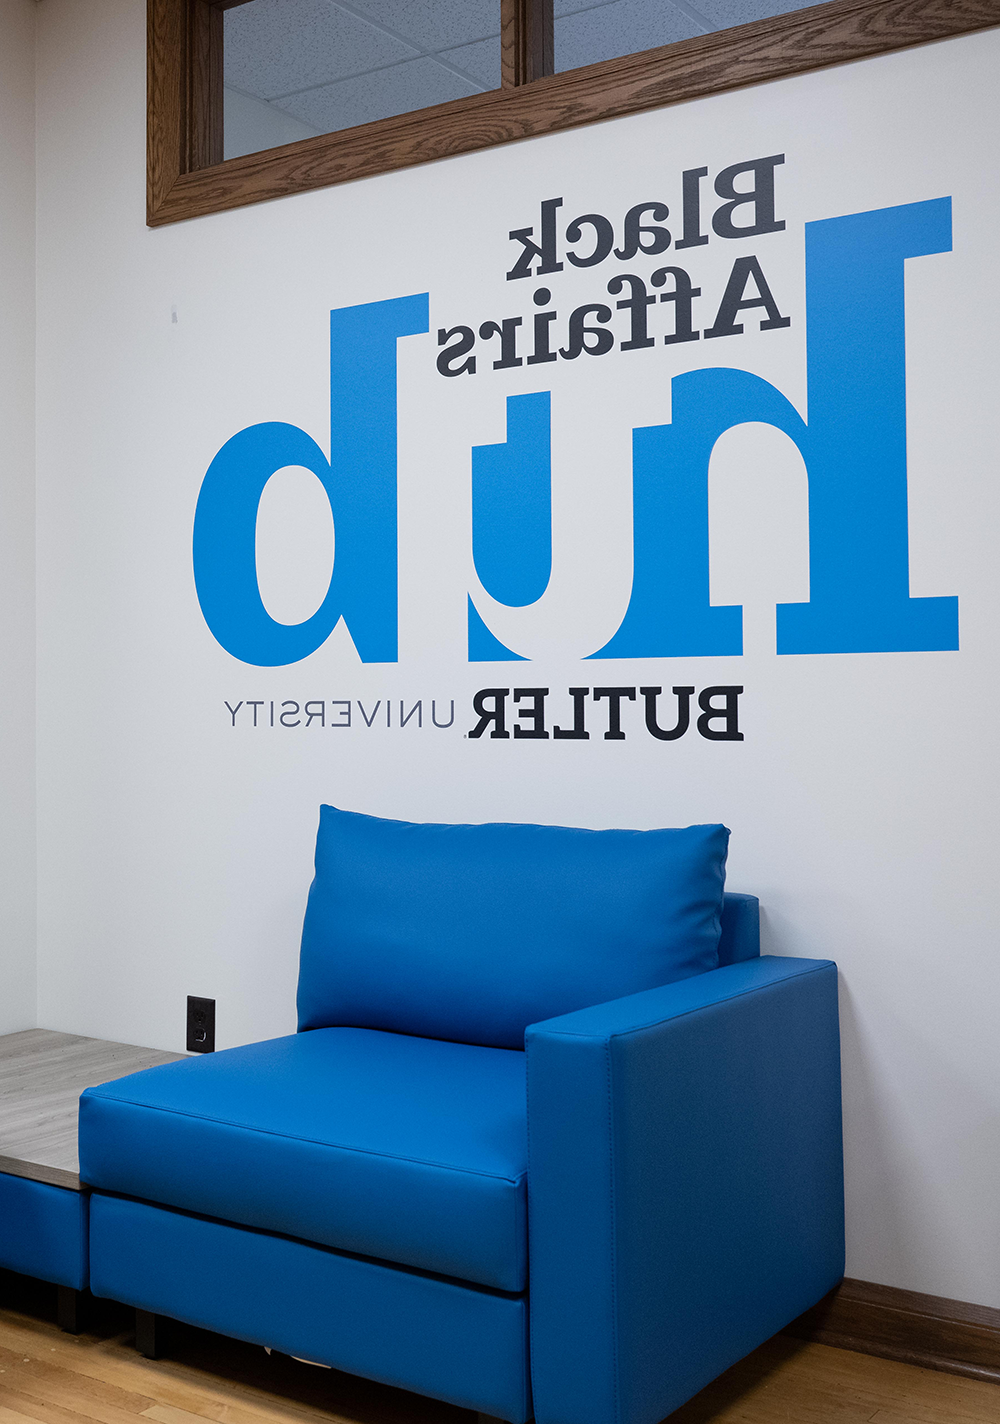 蓝色椅子后面的墙上印着黑人事务中心亚洲博彩平台排名的字样.